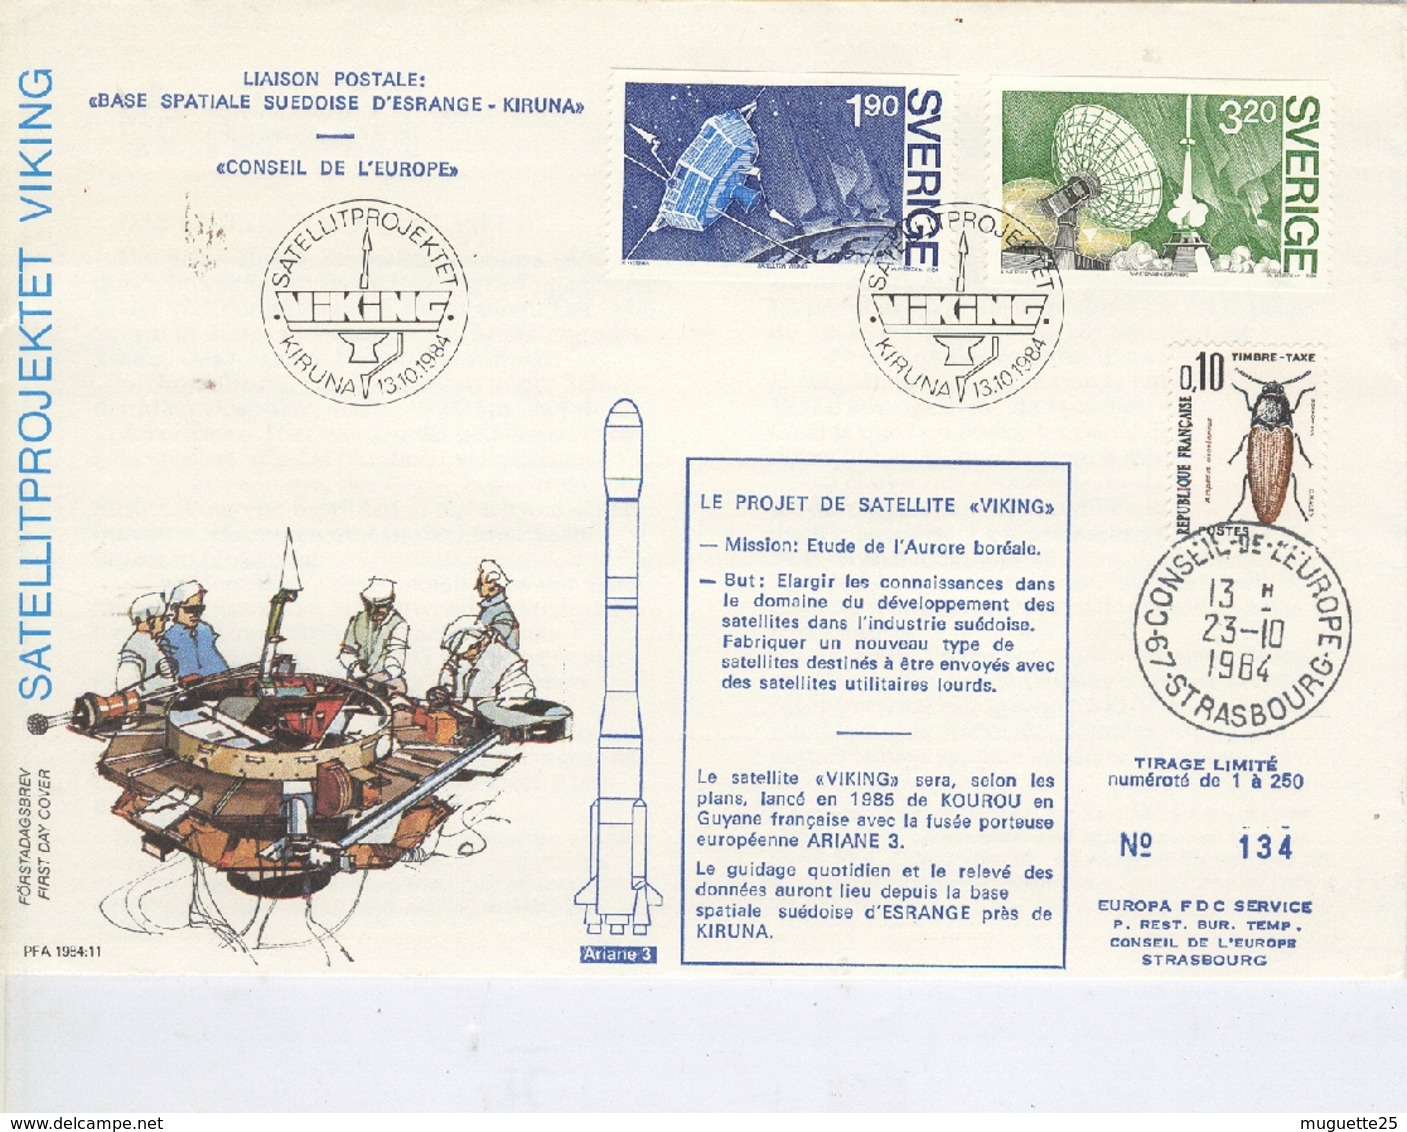 Projet De Satellite VIKING  Liaison Postale Base Spatiale Suédoise D’Esrange-Kiruna  Conseil De L’Europe -13 Octobre 198 - 1966